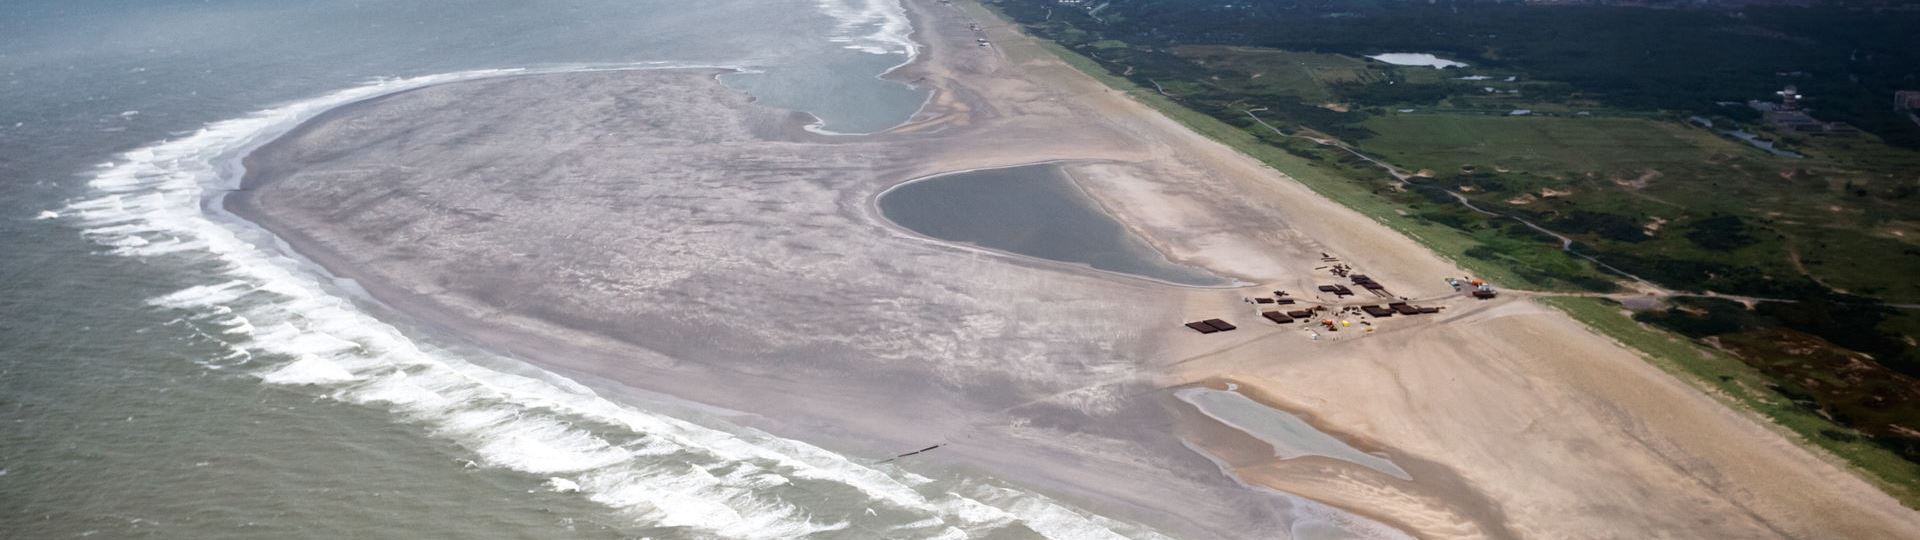 netherlands-sand-motor2.jpg